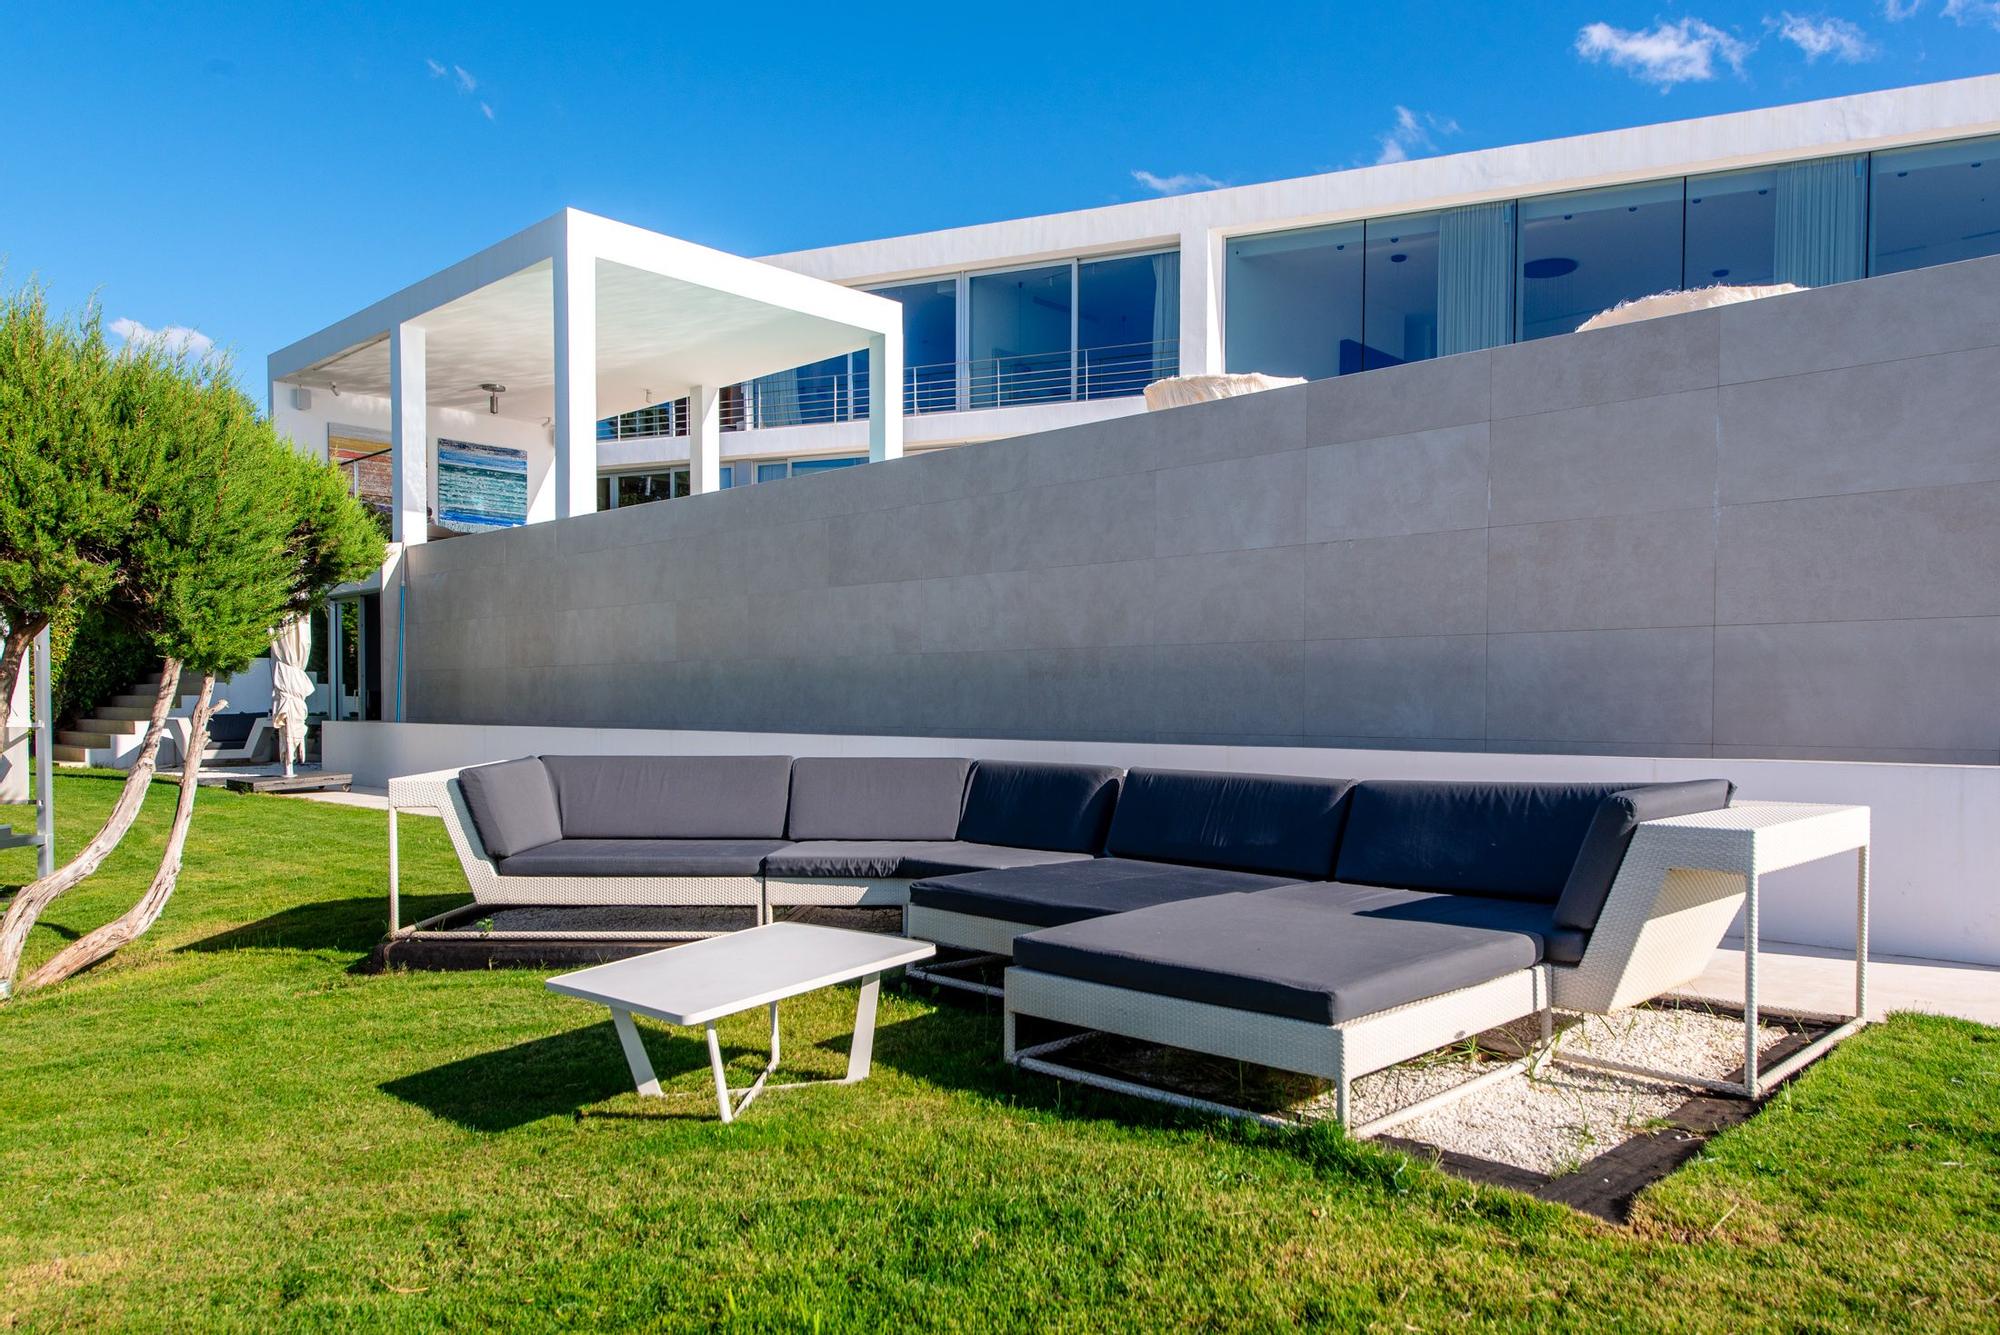 Sale a la venta por 16,5 millones una espectacular villa de Ibiza